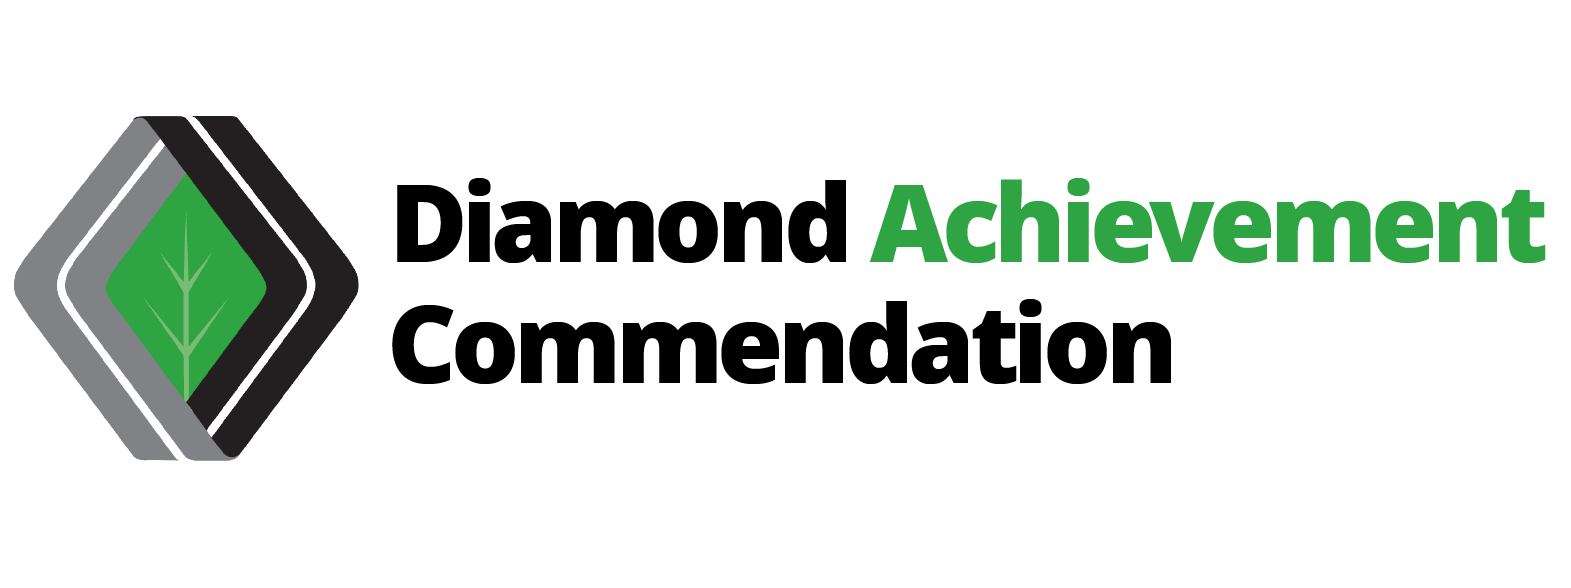 Diamond Achievement Commendation